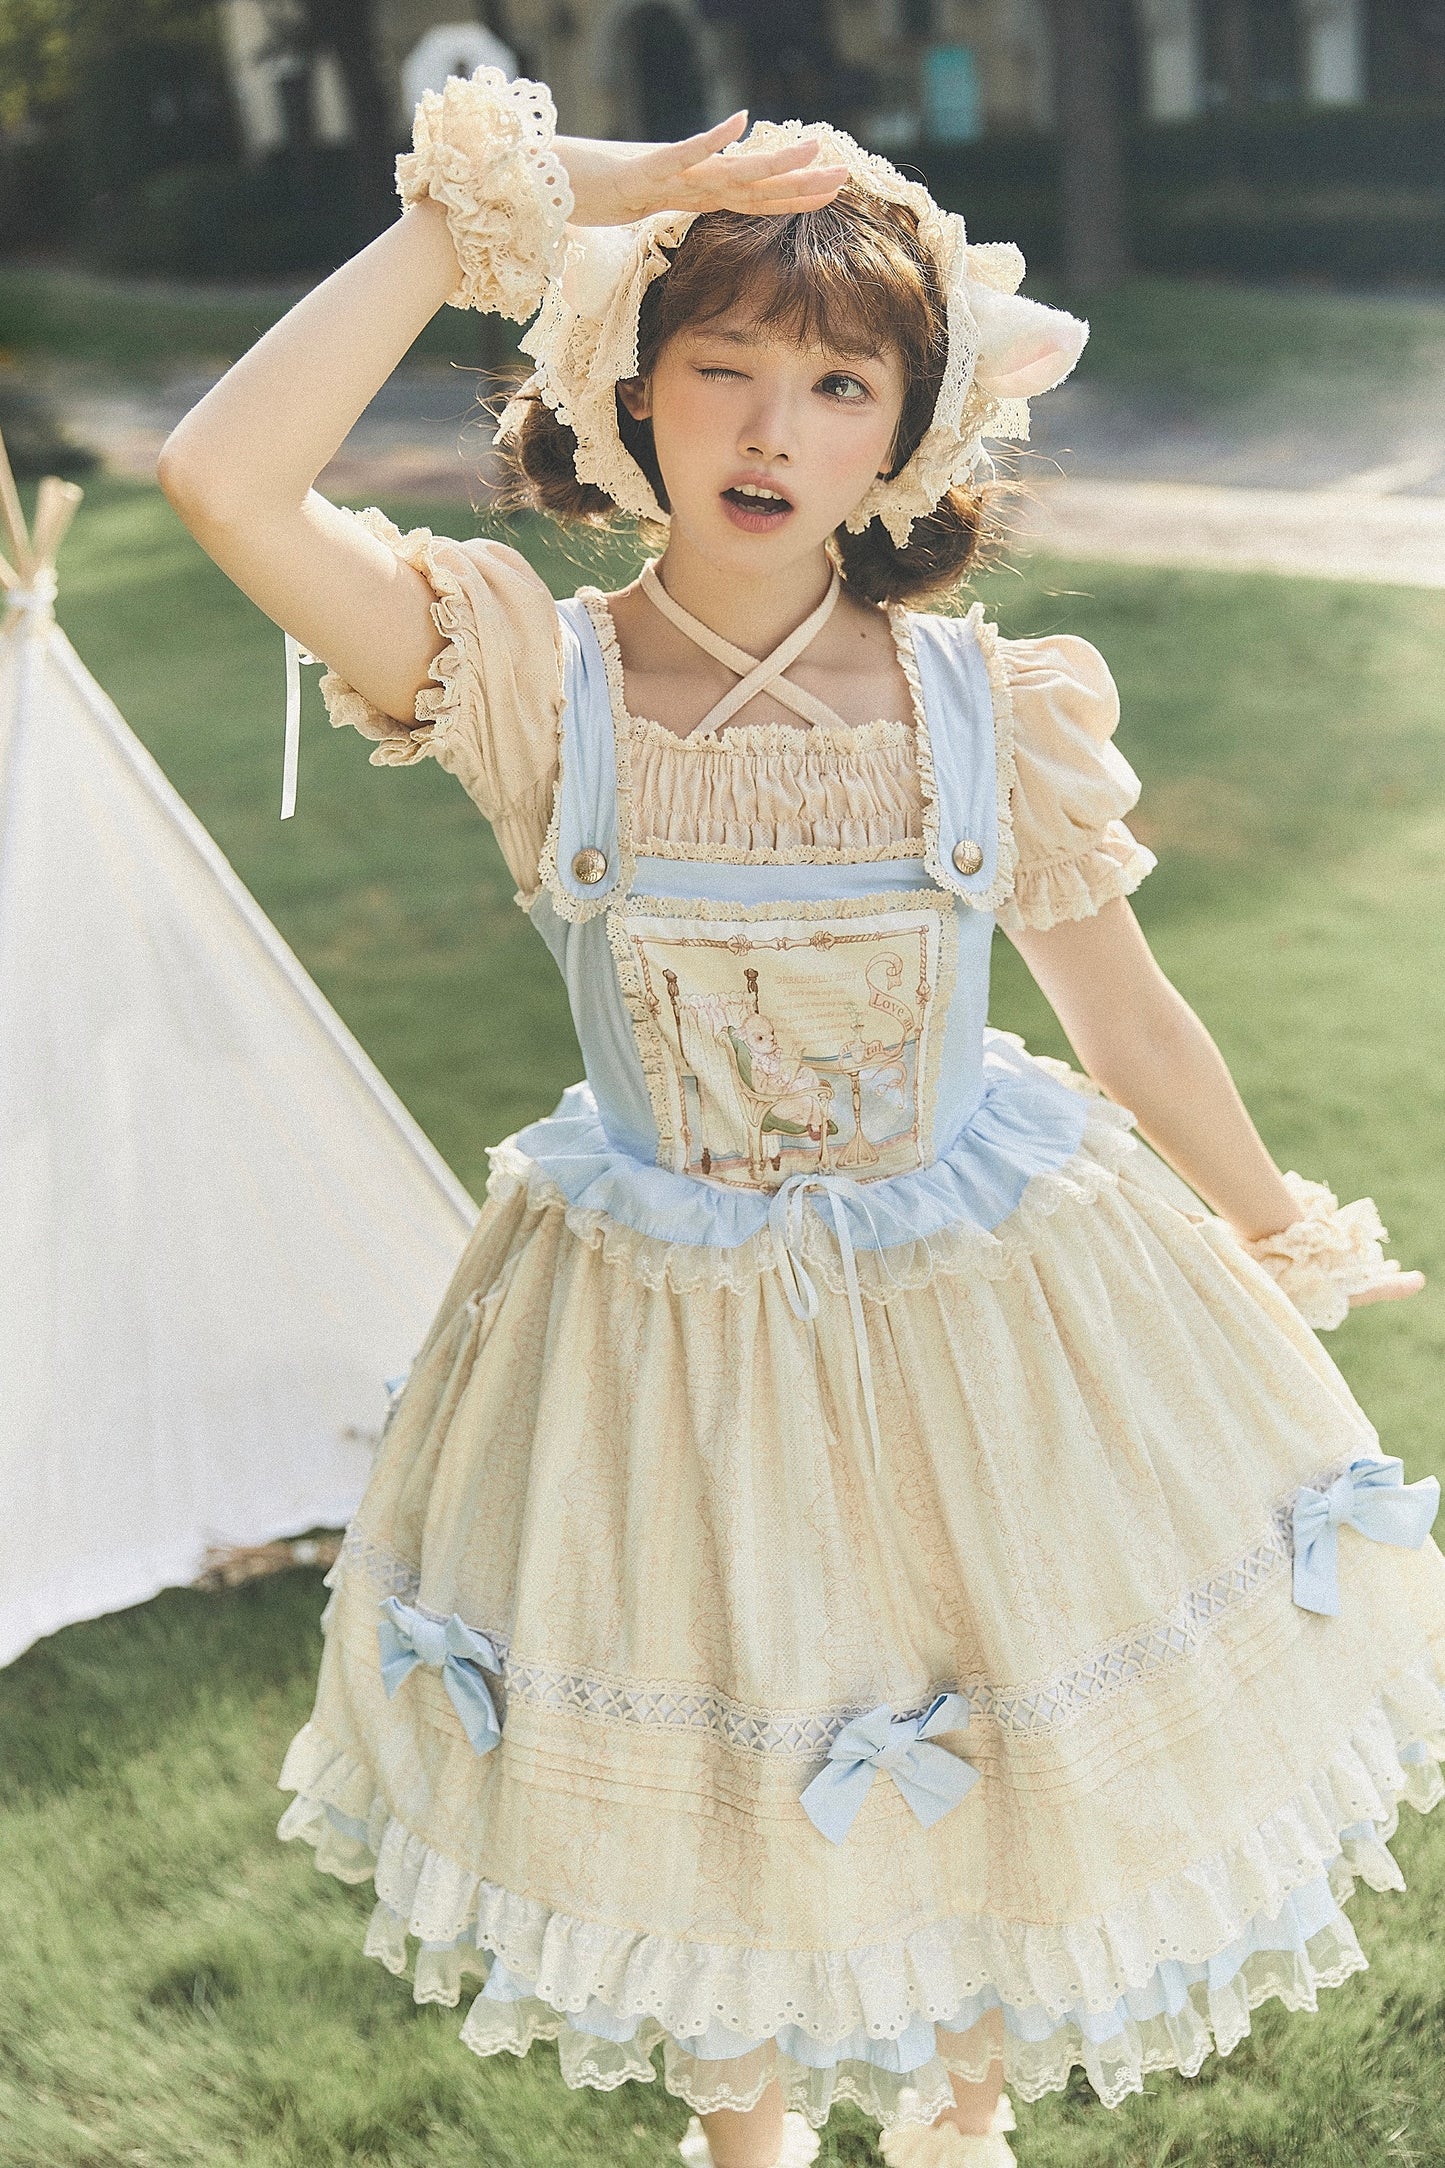 JSK Dress♥Pre-order♥ Nursery Rhyme ♥Sweet Lolita Dress